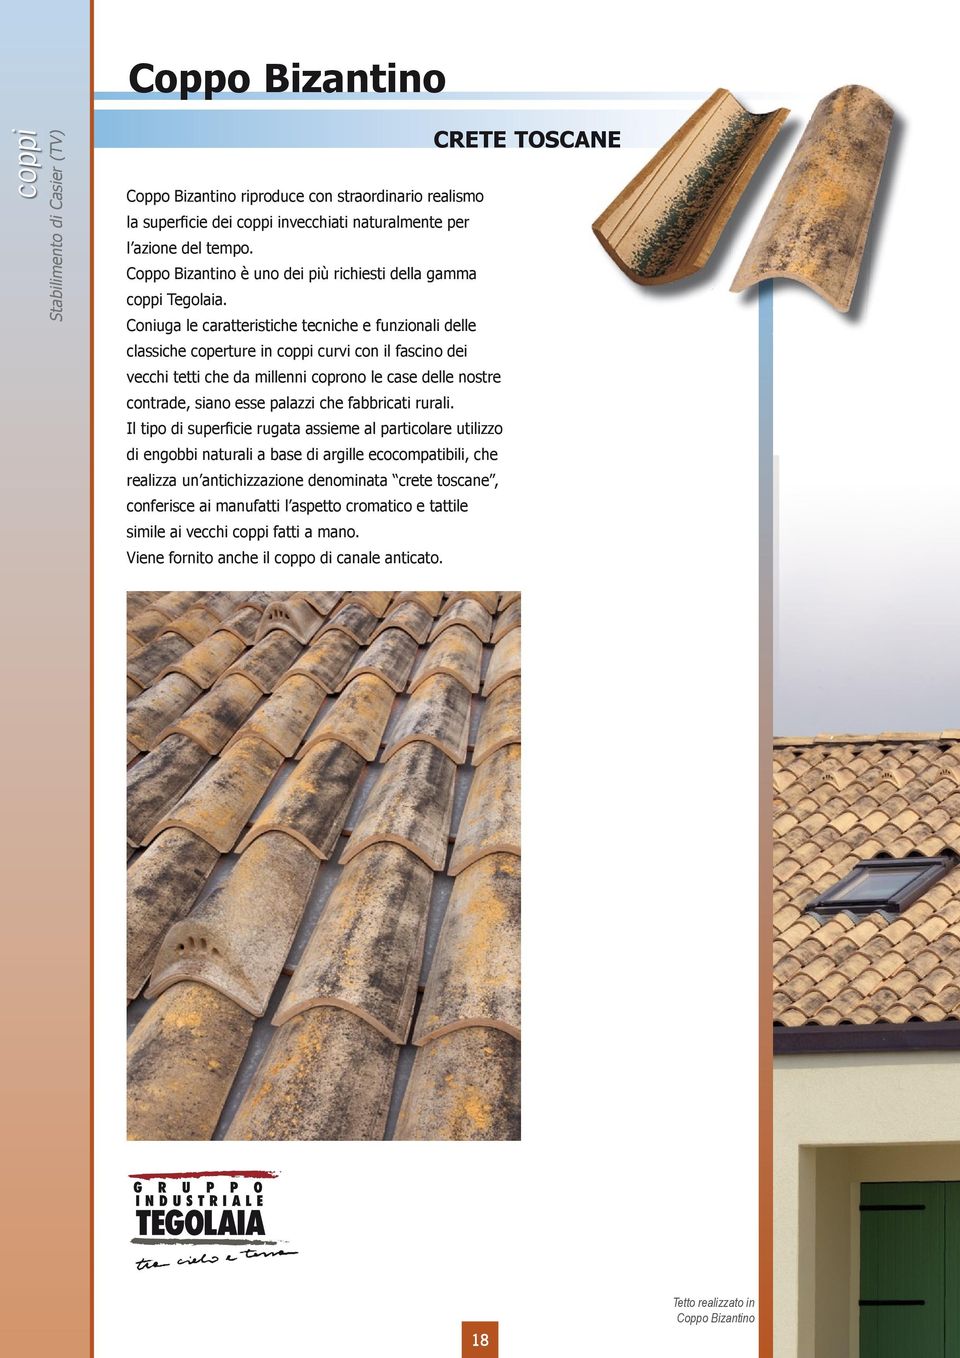 Coniuga le caratteristiche tecniche e funzionali delle classiche coperture in coppi curvi con il fascino dei vecchi tetti che da millenni coprono le case delle nostre contrade, siano esse palazzi che